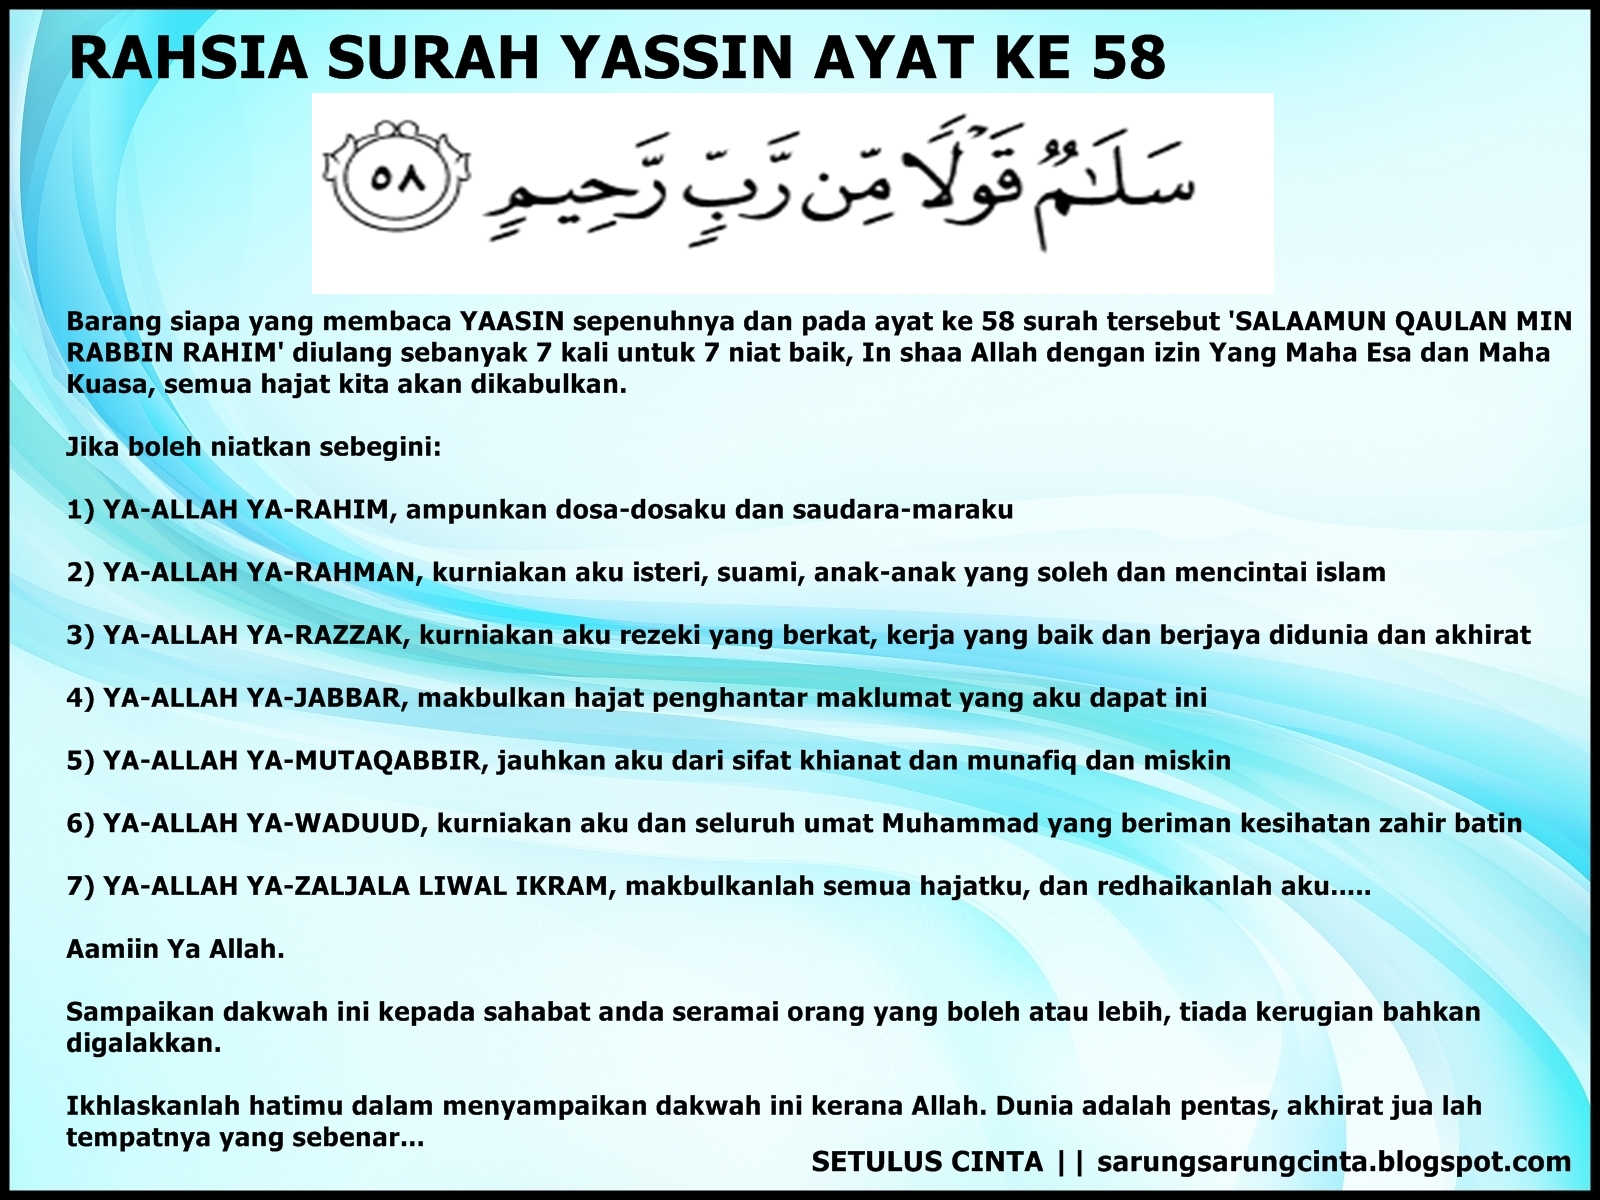 SETULUS CINTA: Rahsia Surah Yassin Ayat Ke 58